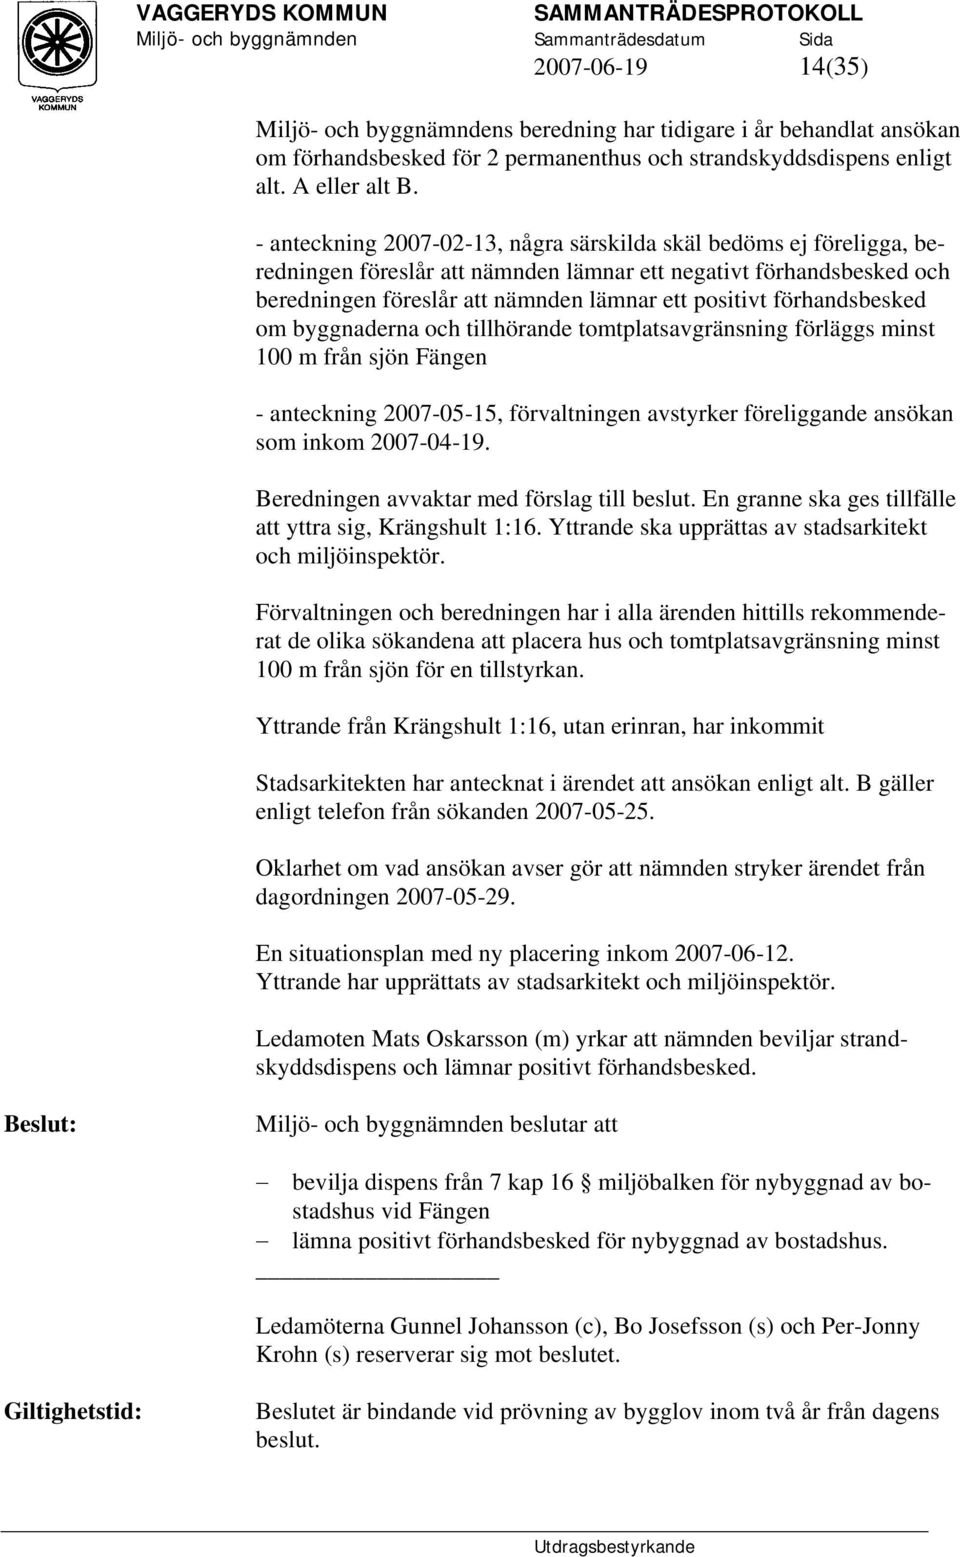 förhandsbesked om byggnaderna och tillhörande tomtplatsavgränsning förläggs minst 100 m från sjön Fängen - anteckning 2007-05-15, förvaltningen avstyrker föreliggande ansökan som inkom 2007-04-19.